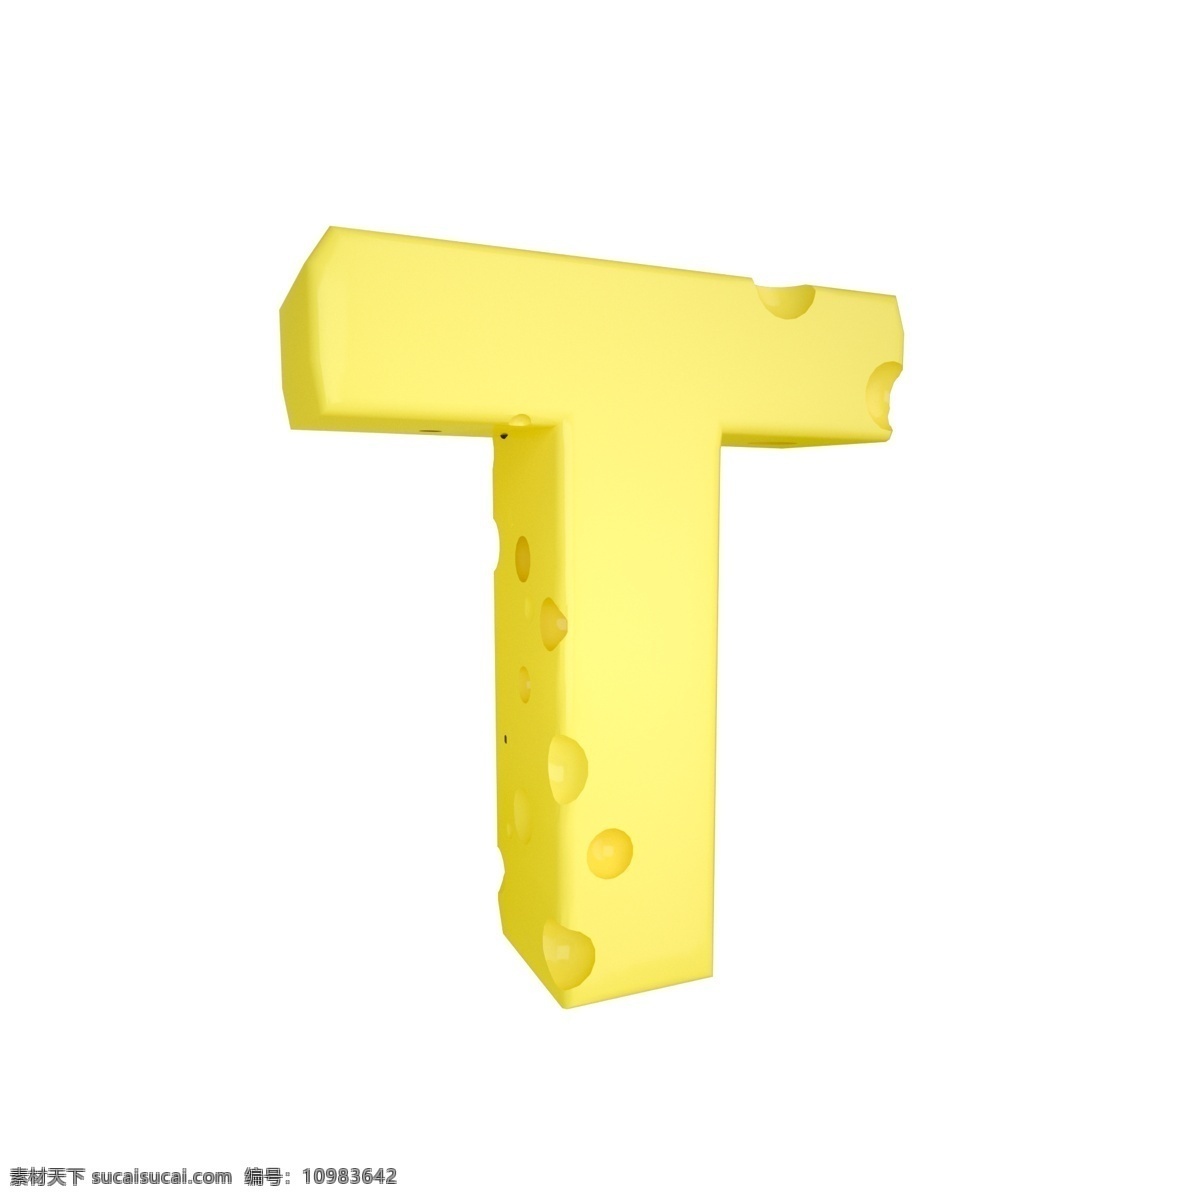 c4d 创意 奶酪 字母 t 装饰 3d 黄色 立体 食物 平面海报配图 电商淘宝装饰 可爱 柔和 字母t